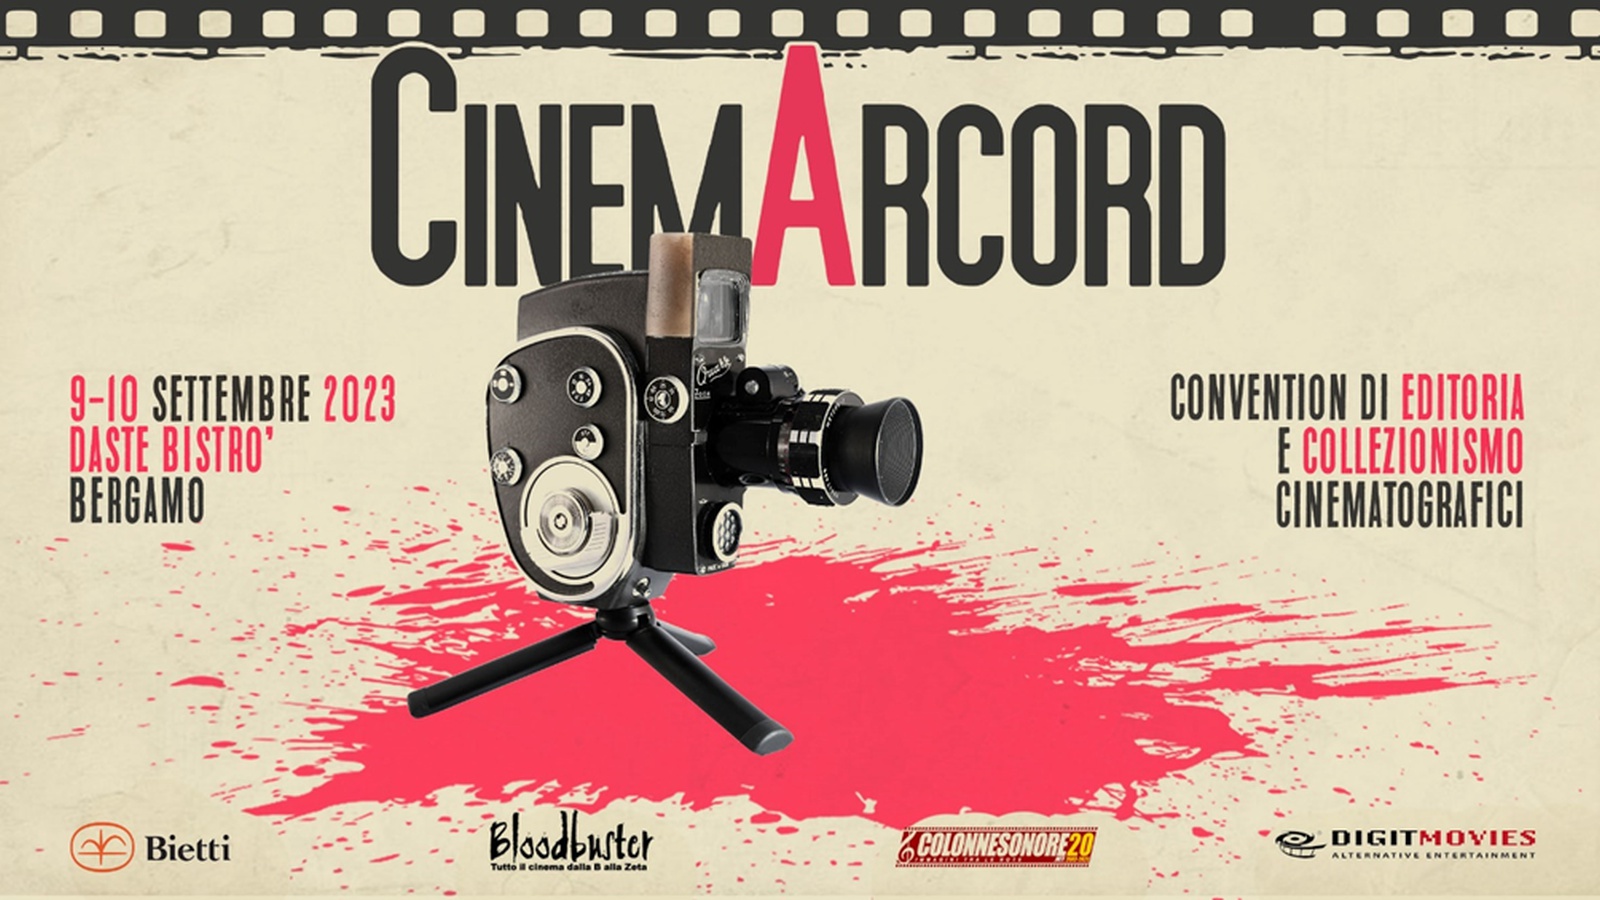 CinemArcord 2023: il programma della  convention di editoria e collezionismo di Bergamo